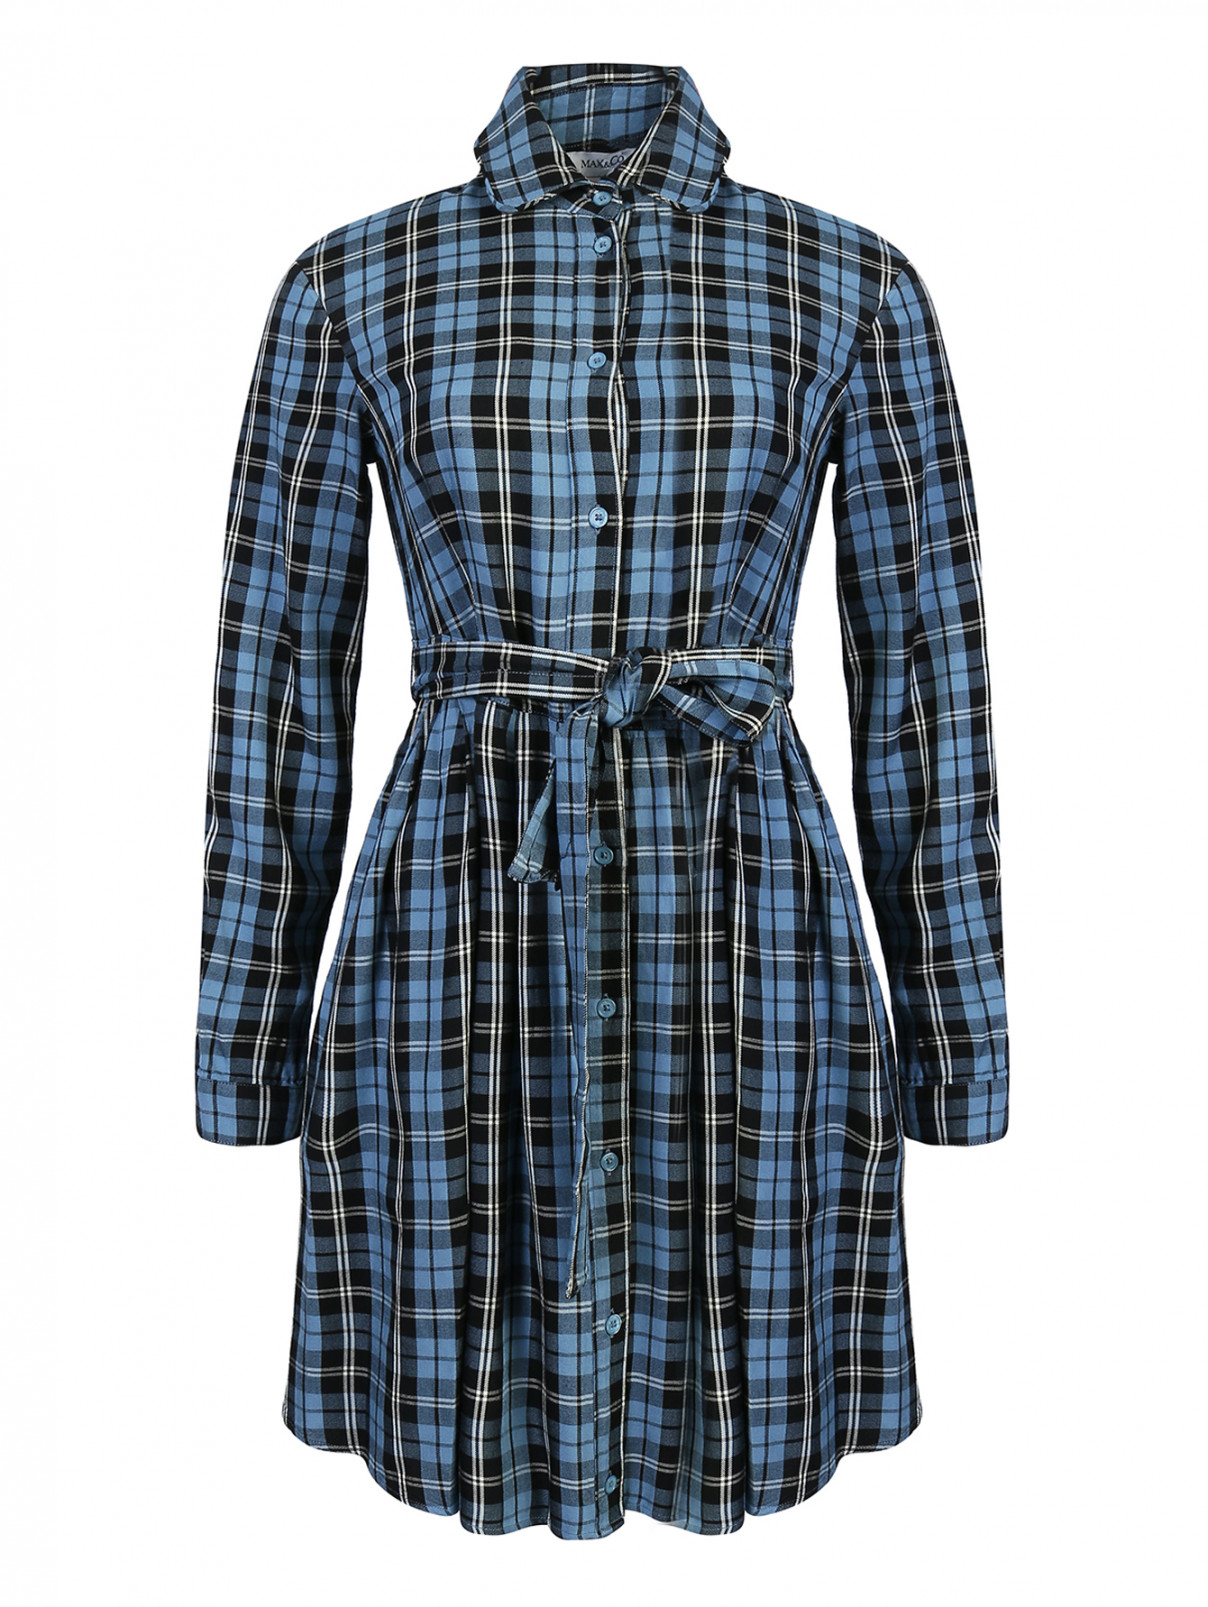 Платье из ткани в клетку со складками на талии Max&Co  –  Общий вид  – Цвет:  Синий